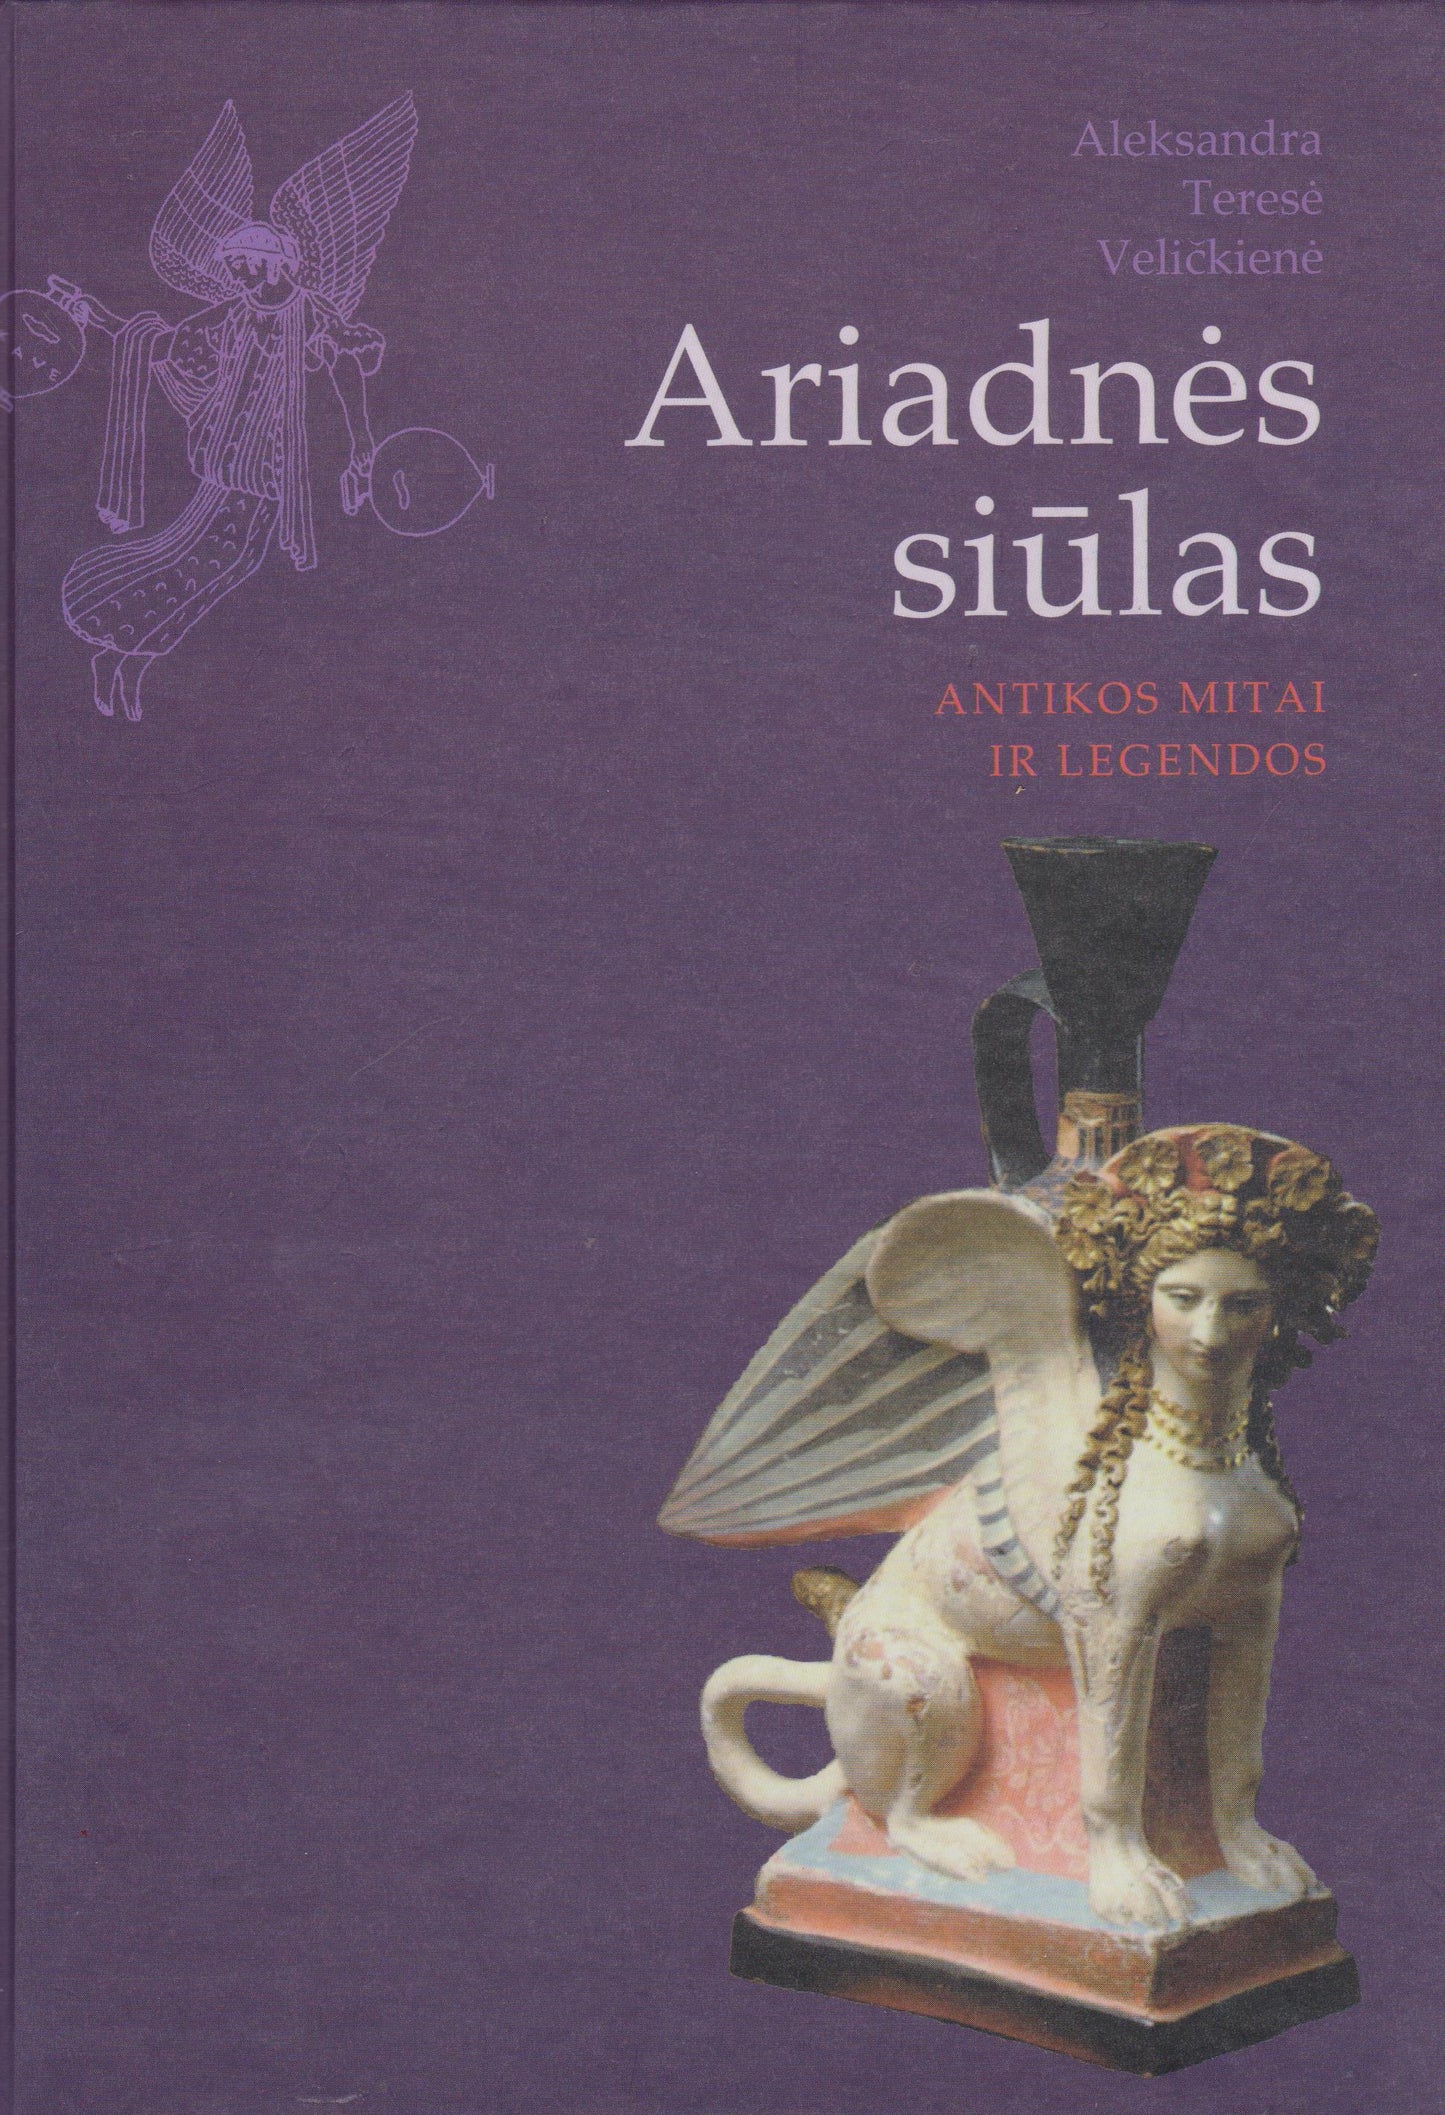 Ariadnės siūlas : Antikos mitai ir legendos